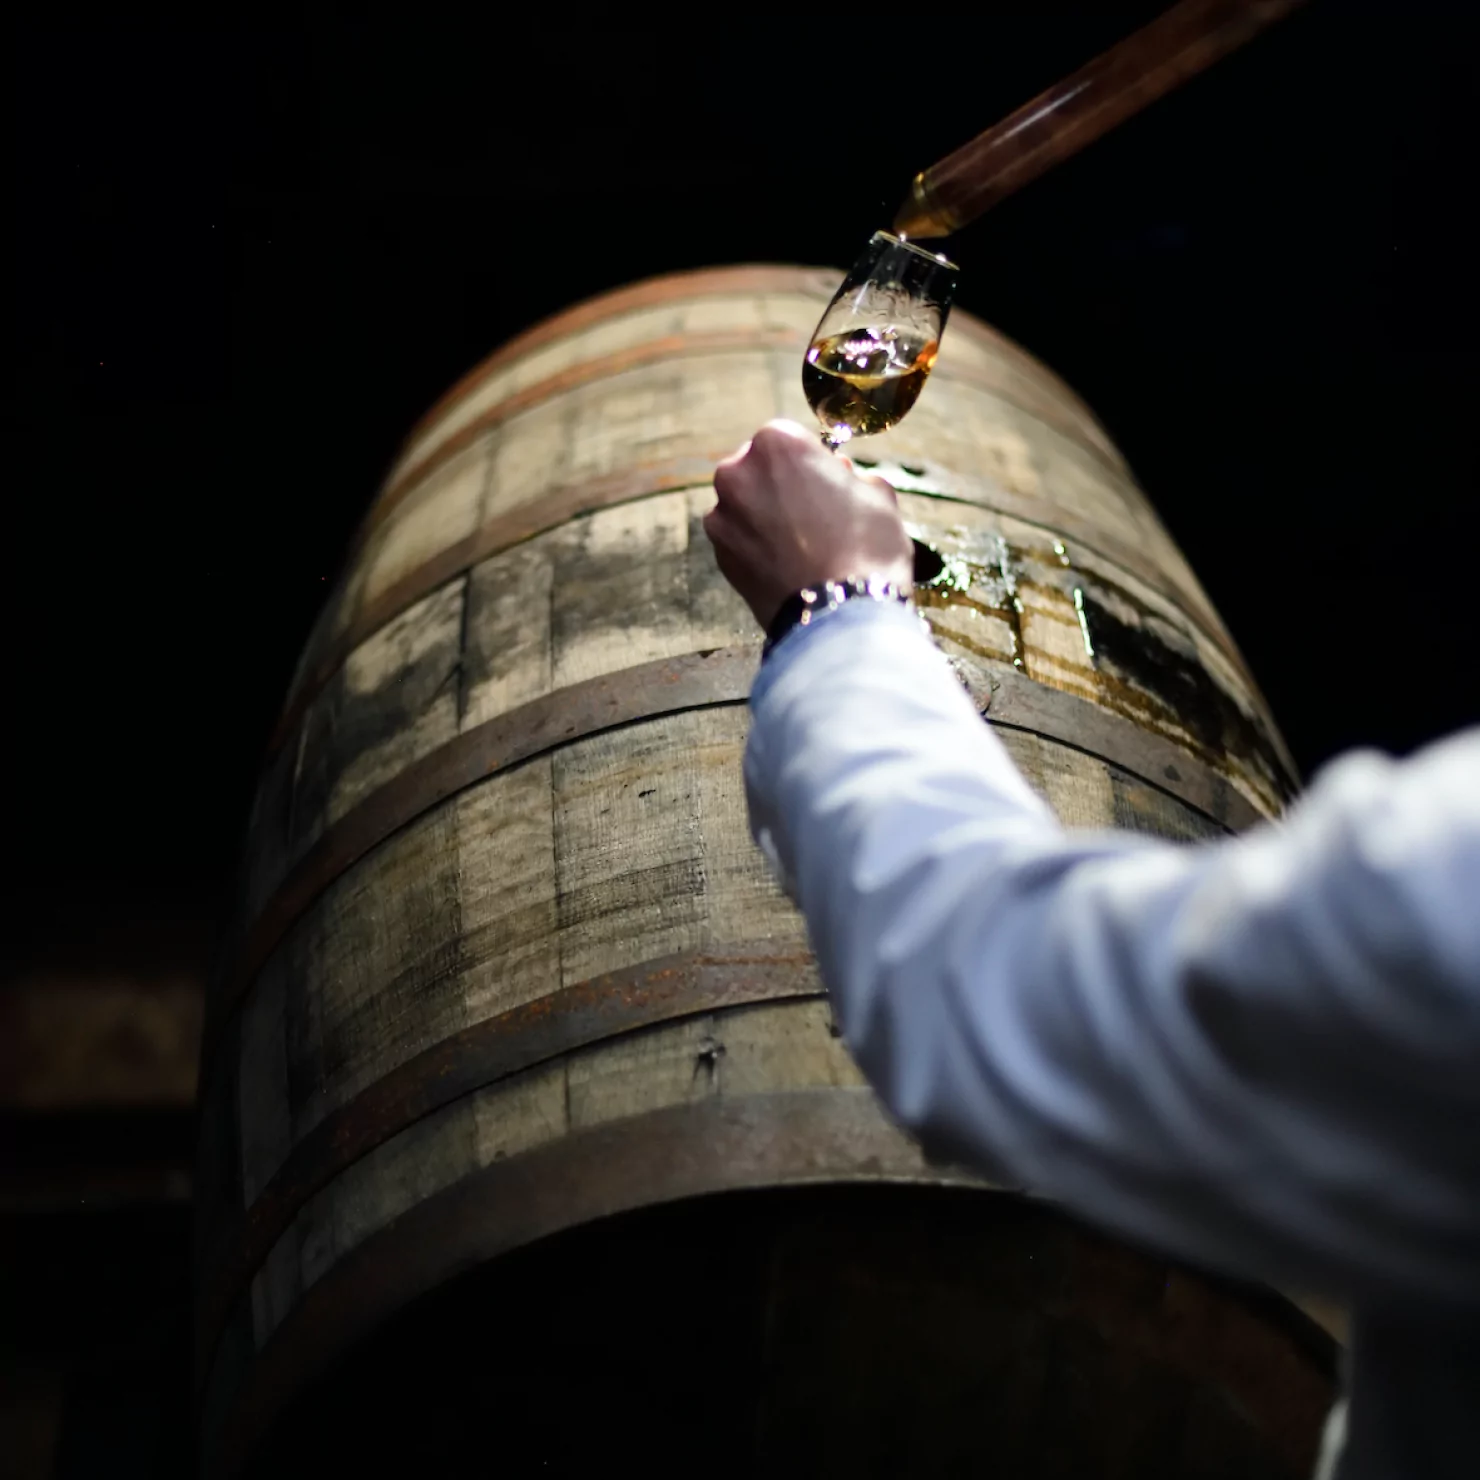 Fuji-Whisky-Blending-Warehouse-Whisky-Making-Winemaking-Photo 1-modal